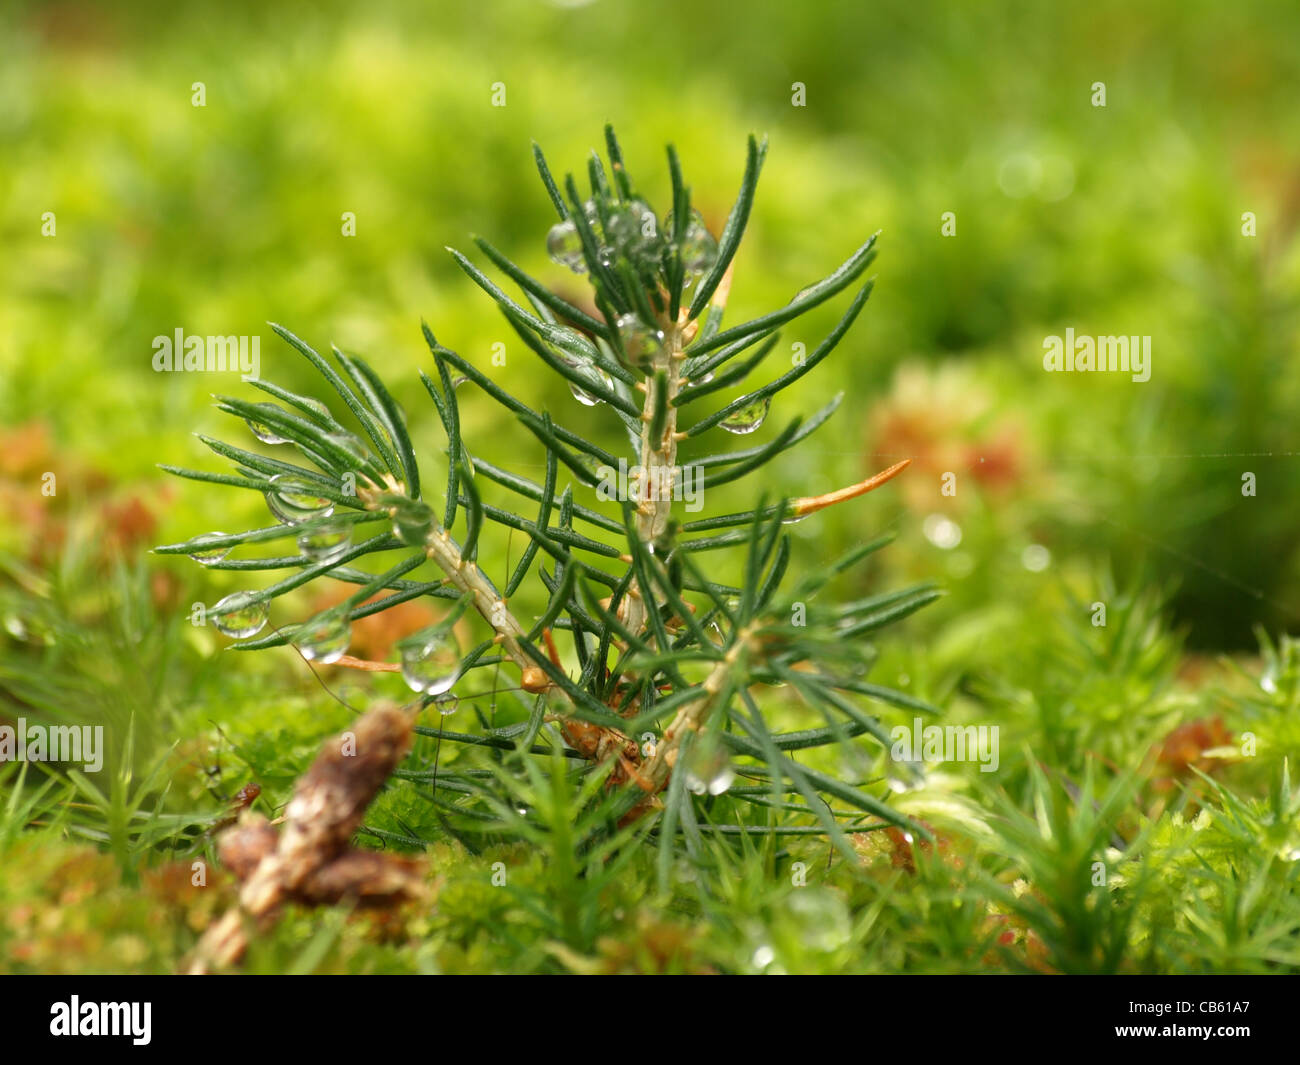 Young fir tree and Haircap moss / Polytrichum formosum / Junge Tanne und Schönes Frauenhaarmoos / Schönes Widertonmoos Stock Photo